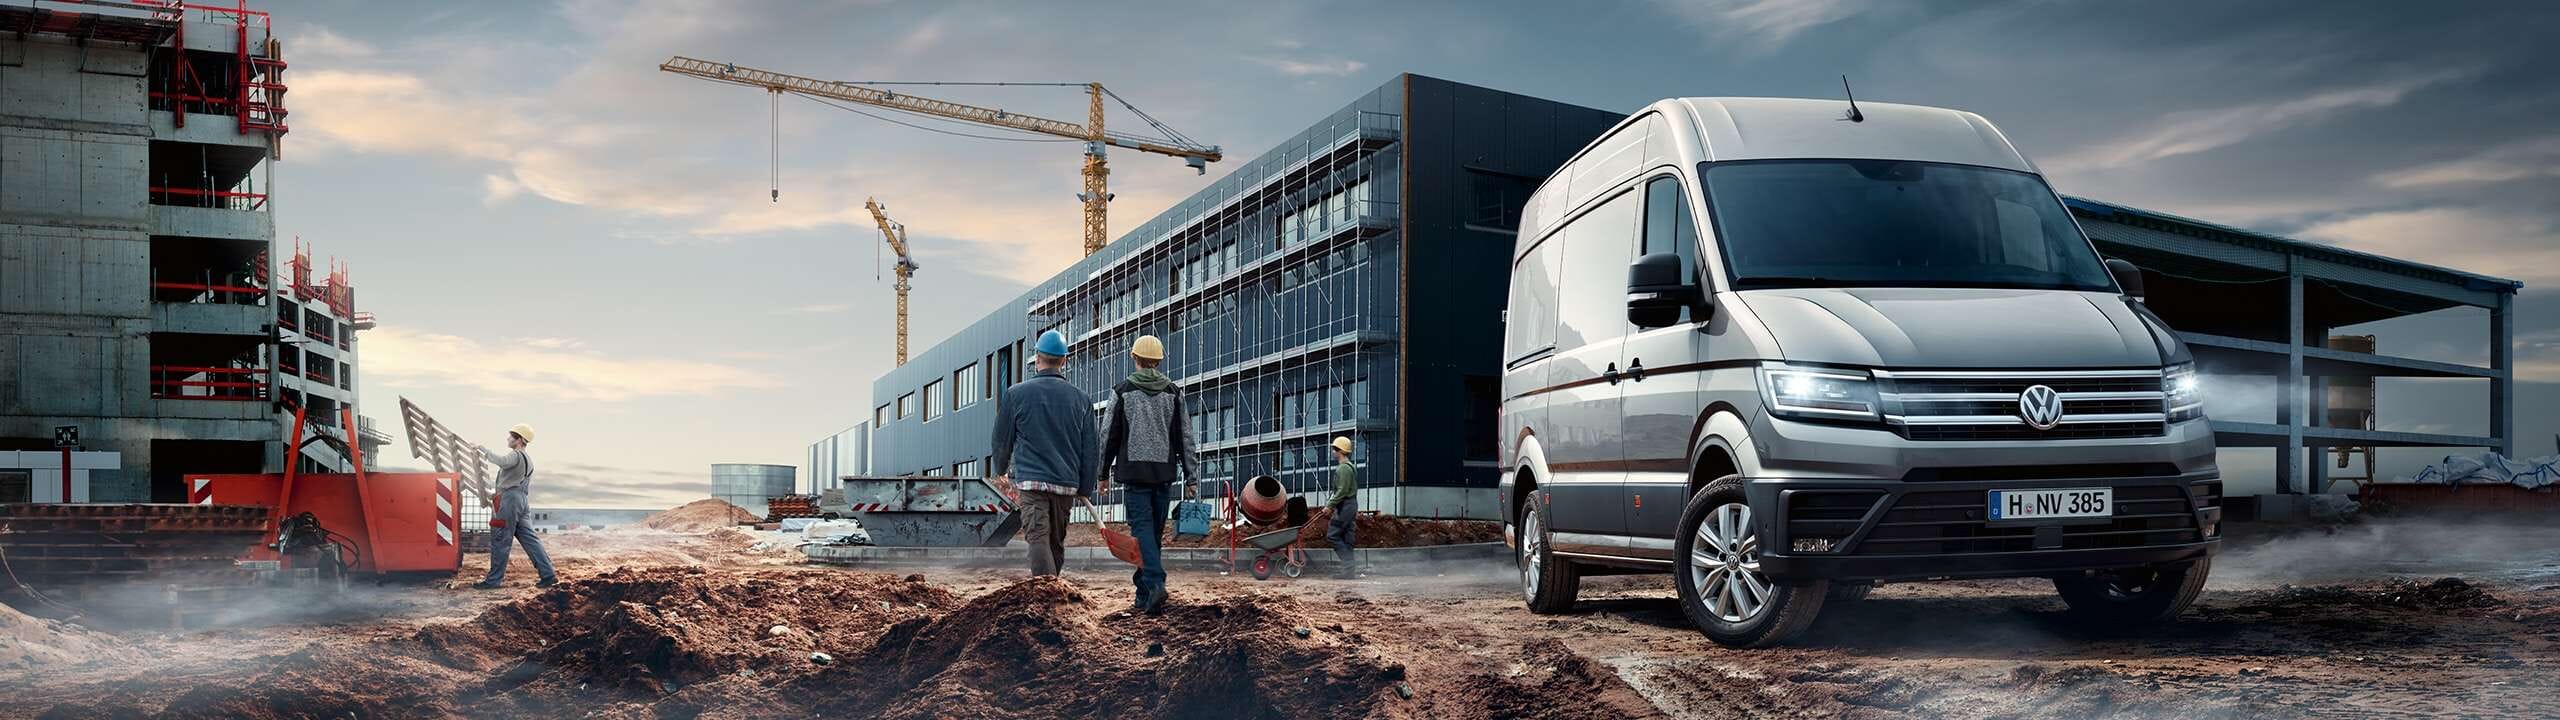 Volkswagen Crafter auf einer Baustelle